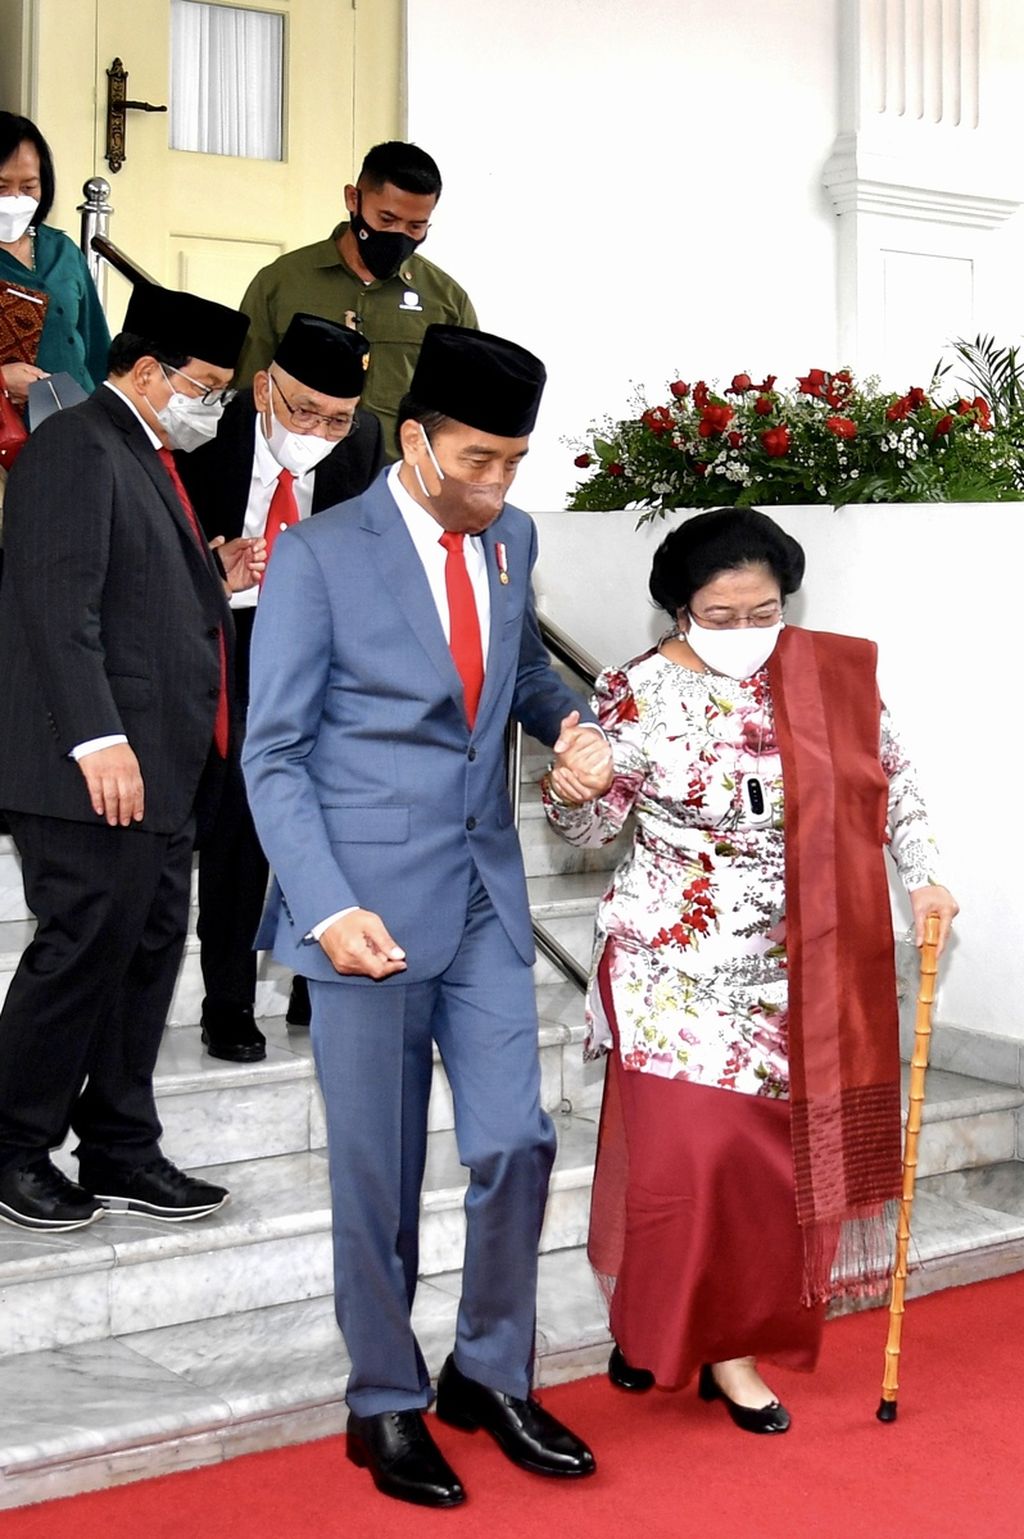 Presiden Joko Widodo menggandeng tangan Ketua Umum PDI-P Megawati Soekarnoputri saat mengantarkan ke mobil setelah pelantikan Megawati sebagai Ketua Dewan Pengarah Badan Pembinaan Ideologi Pancasila 2022-2027 di Istana Negara, Jakarta, Selasa (7/6/2022).  